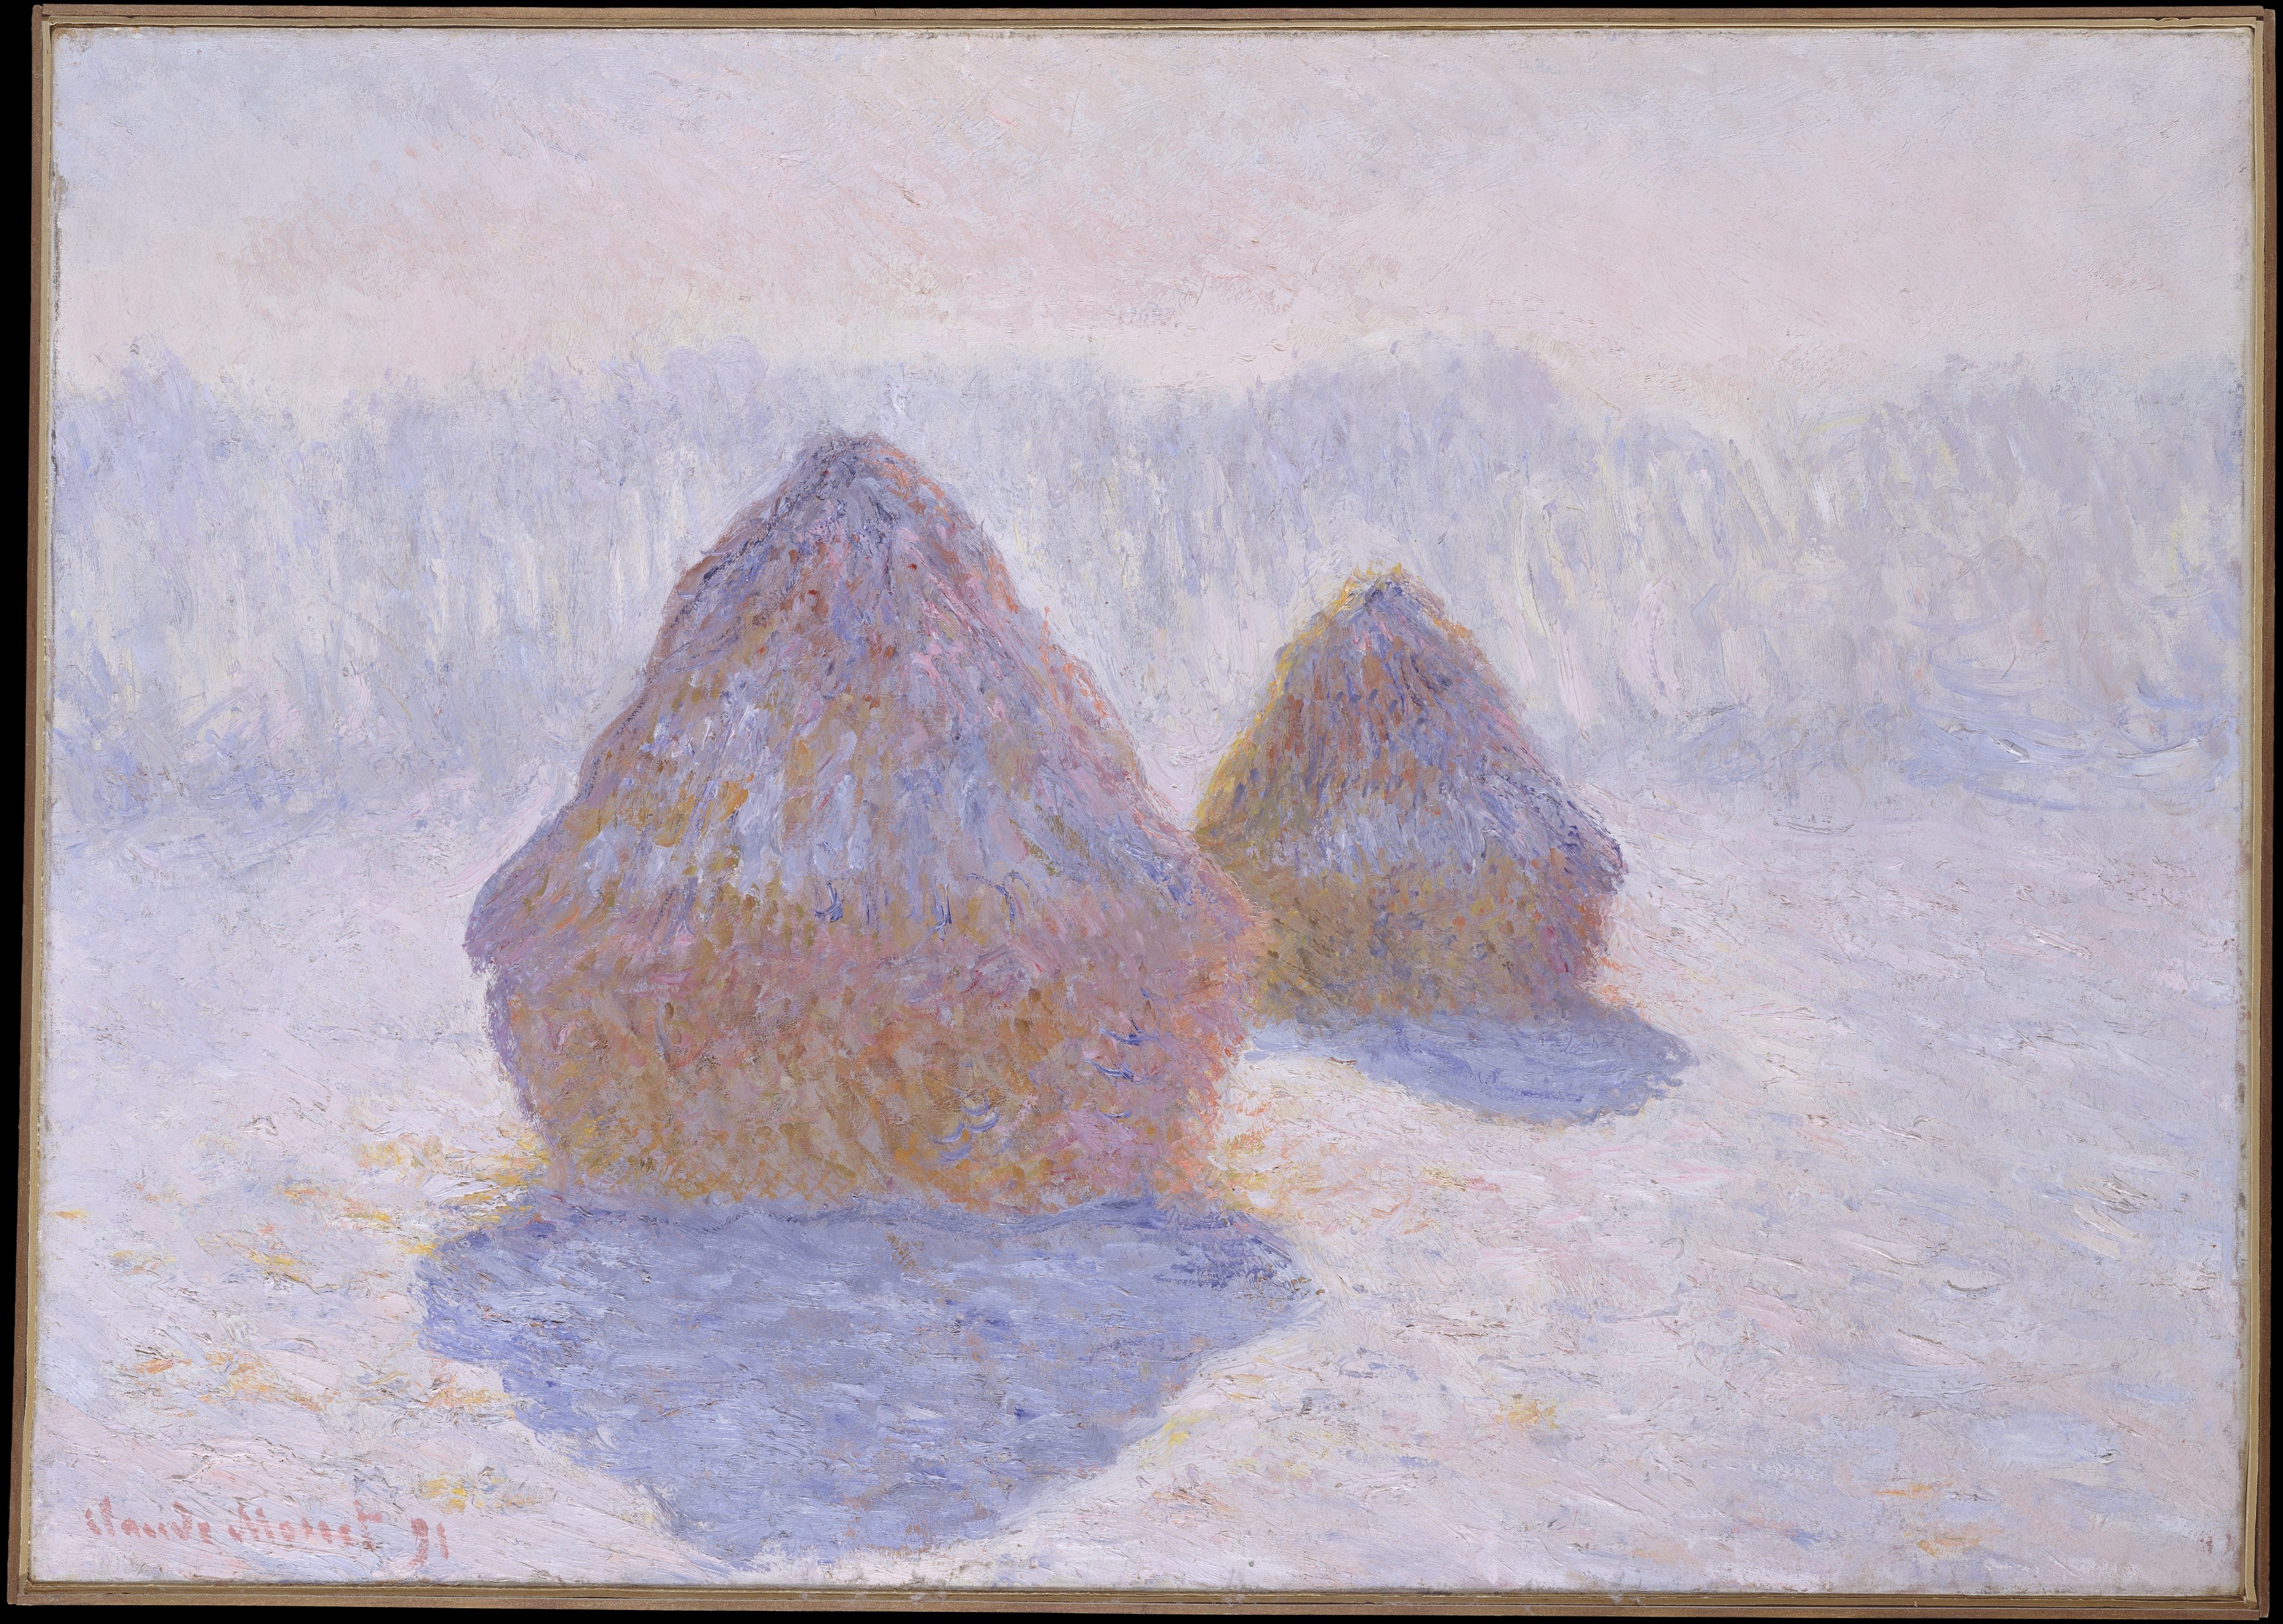 Almiares (con efecto de nieve y sol) by Claude Monet - 1891 - 65.4 x 92.1 cm Museo Metropolitano de Arte